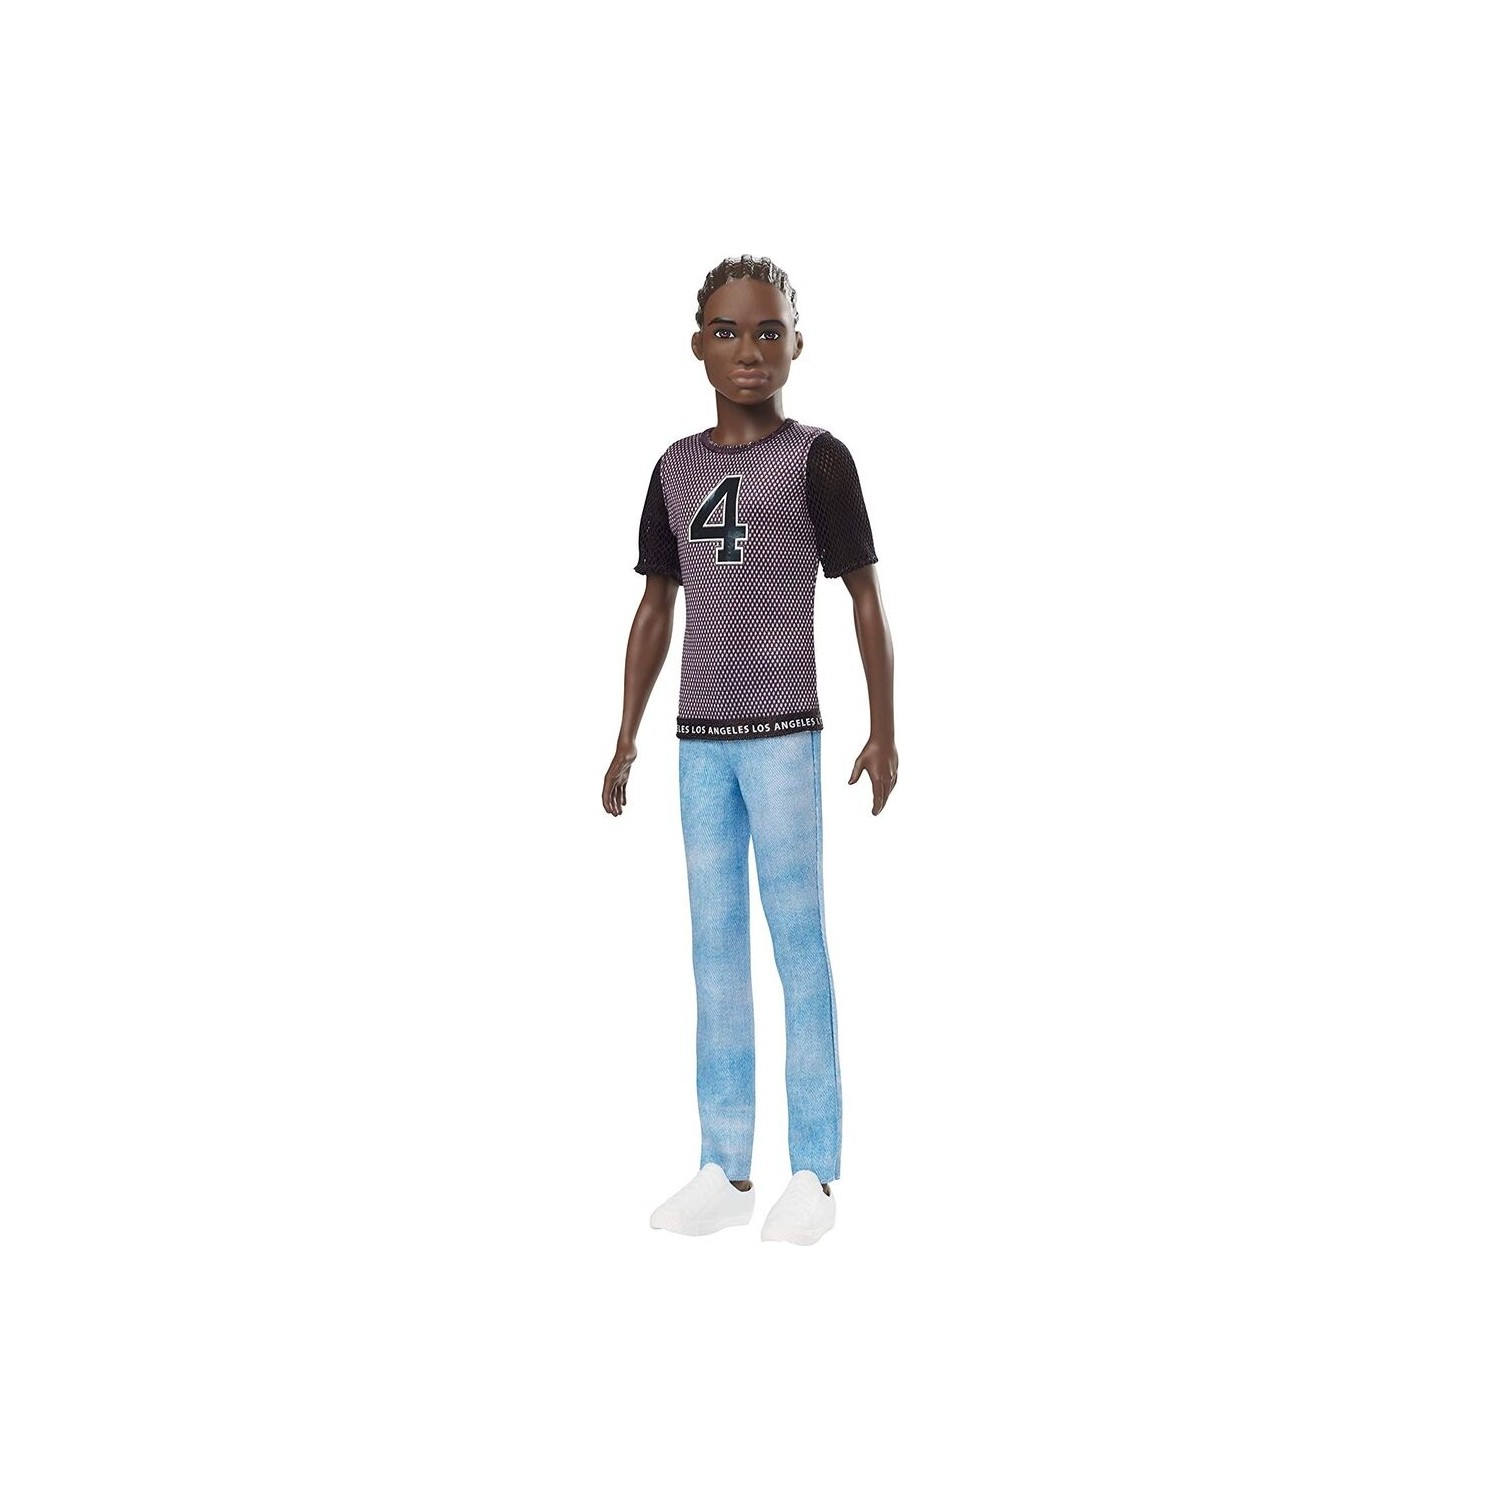 Кукла Barbie Кен DWK44-GDV13